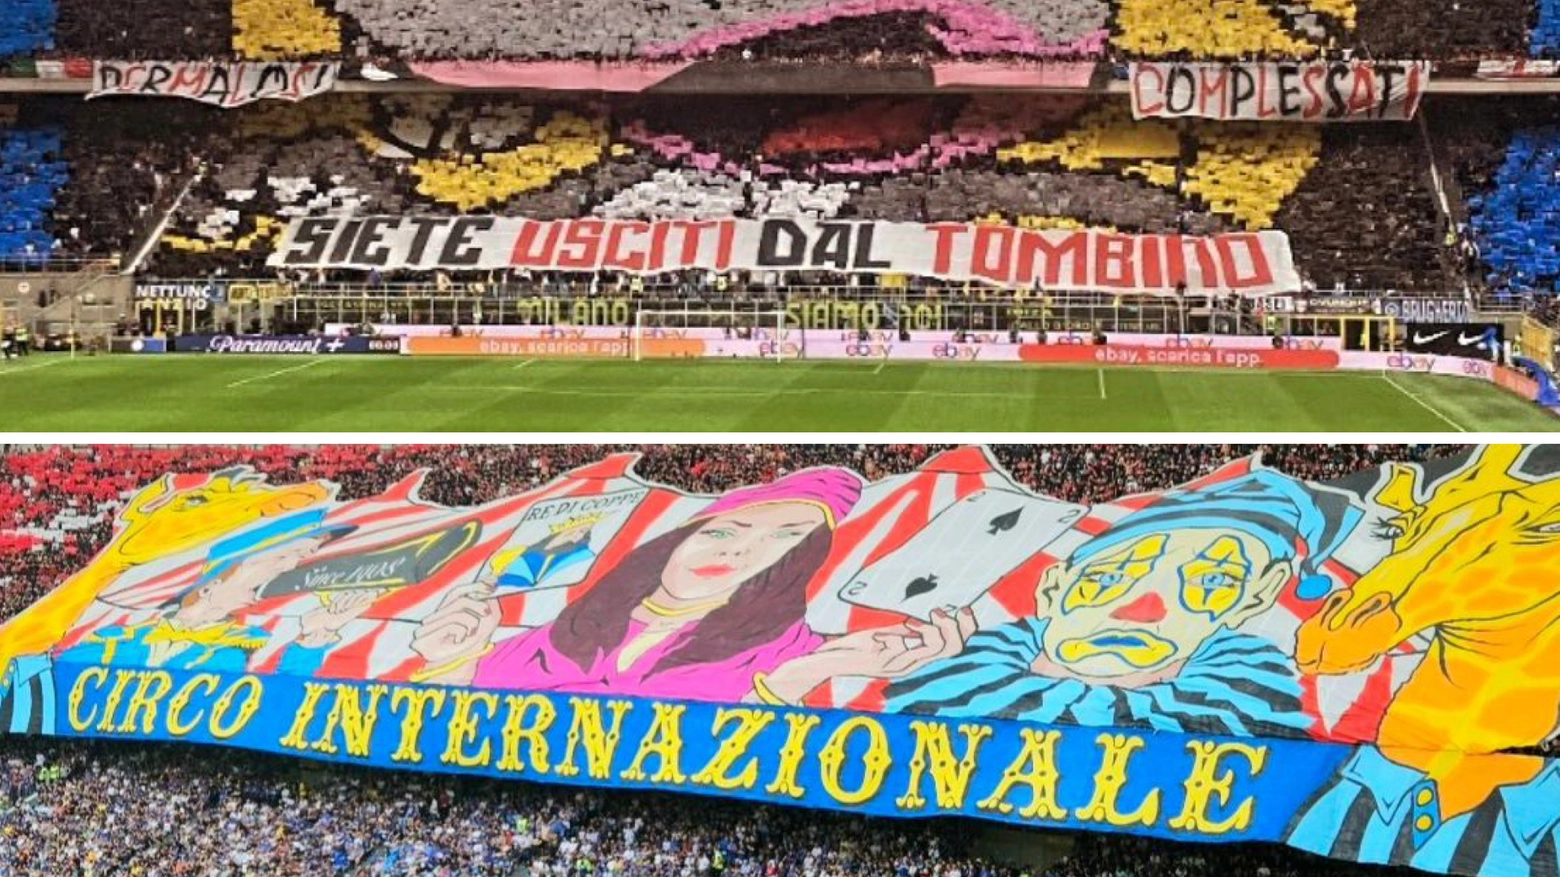 A sinistra la coreografia dell'Inter "Siete usciti dal tombino", a destra quella del Milan "Circo internazionale"